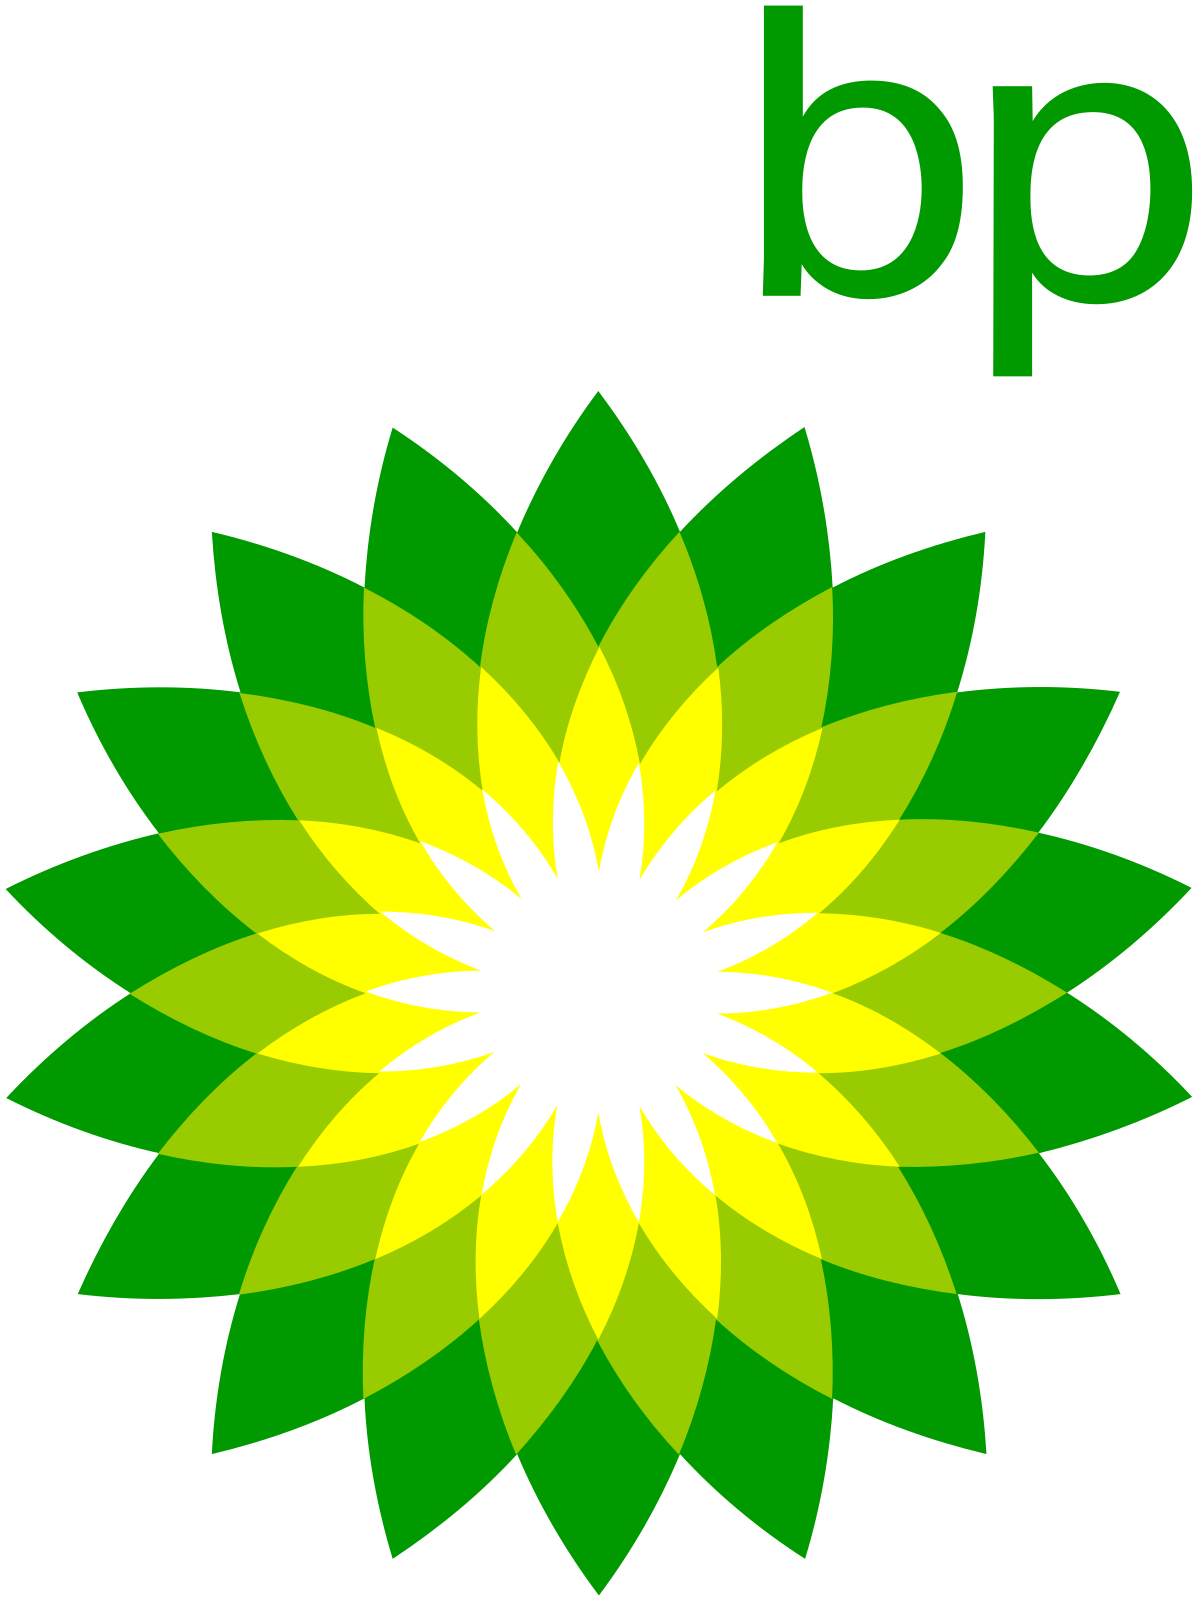 BP Green Logo - BP